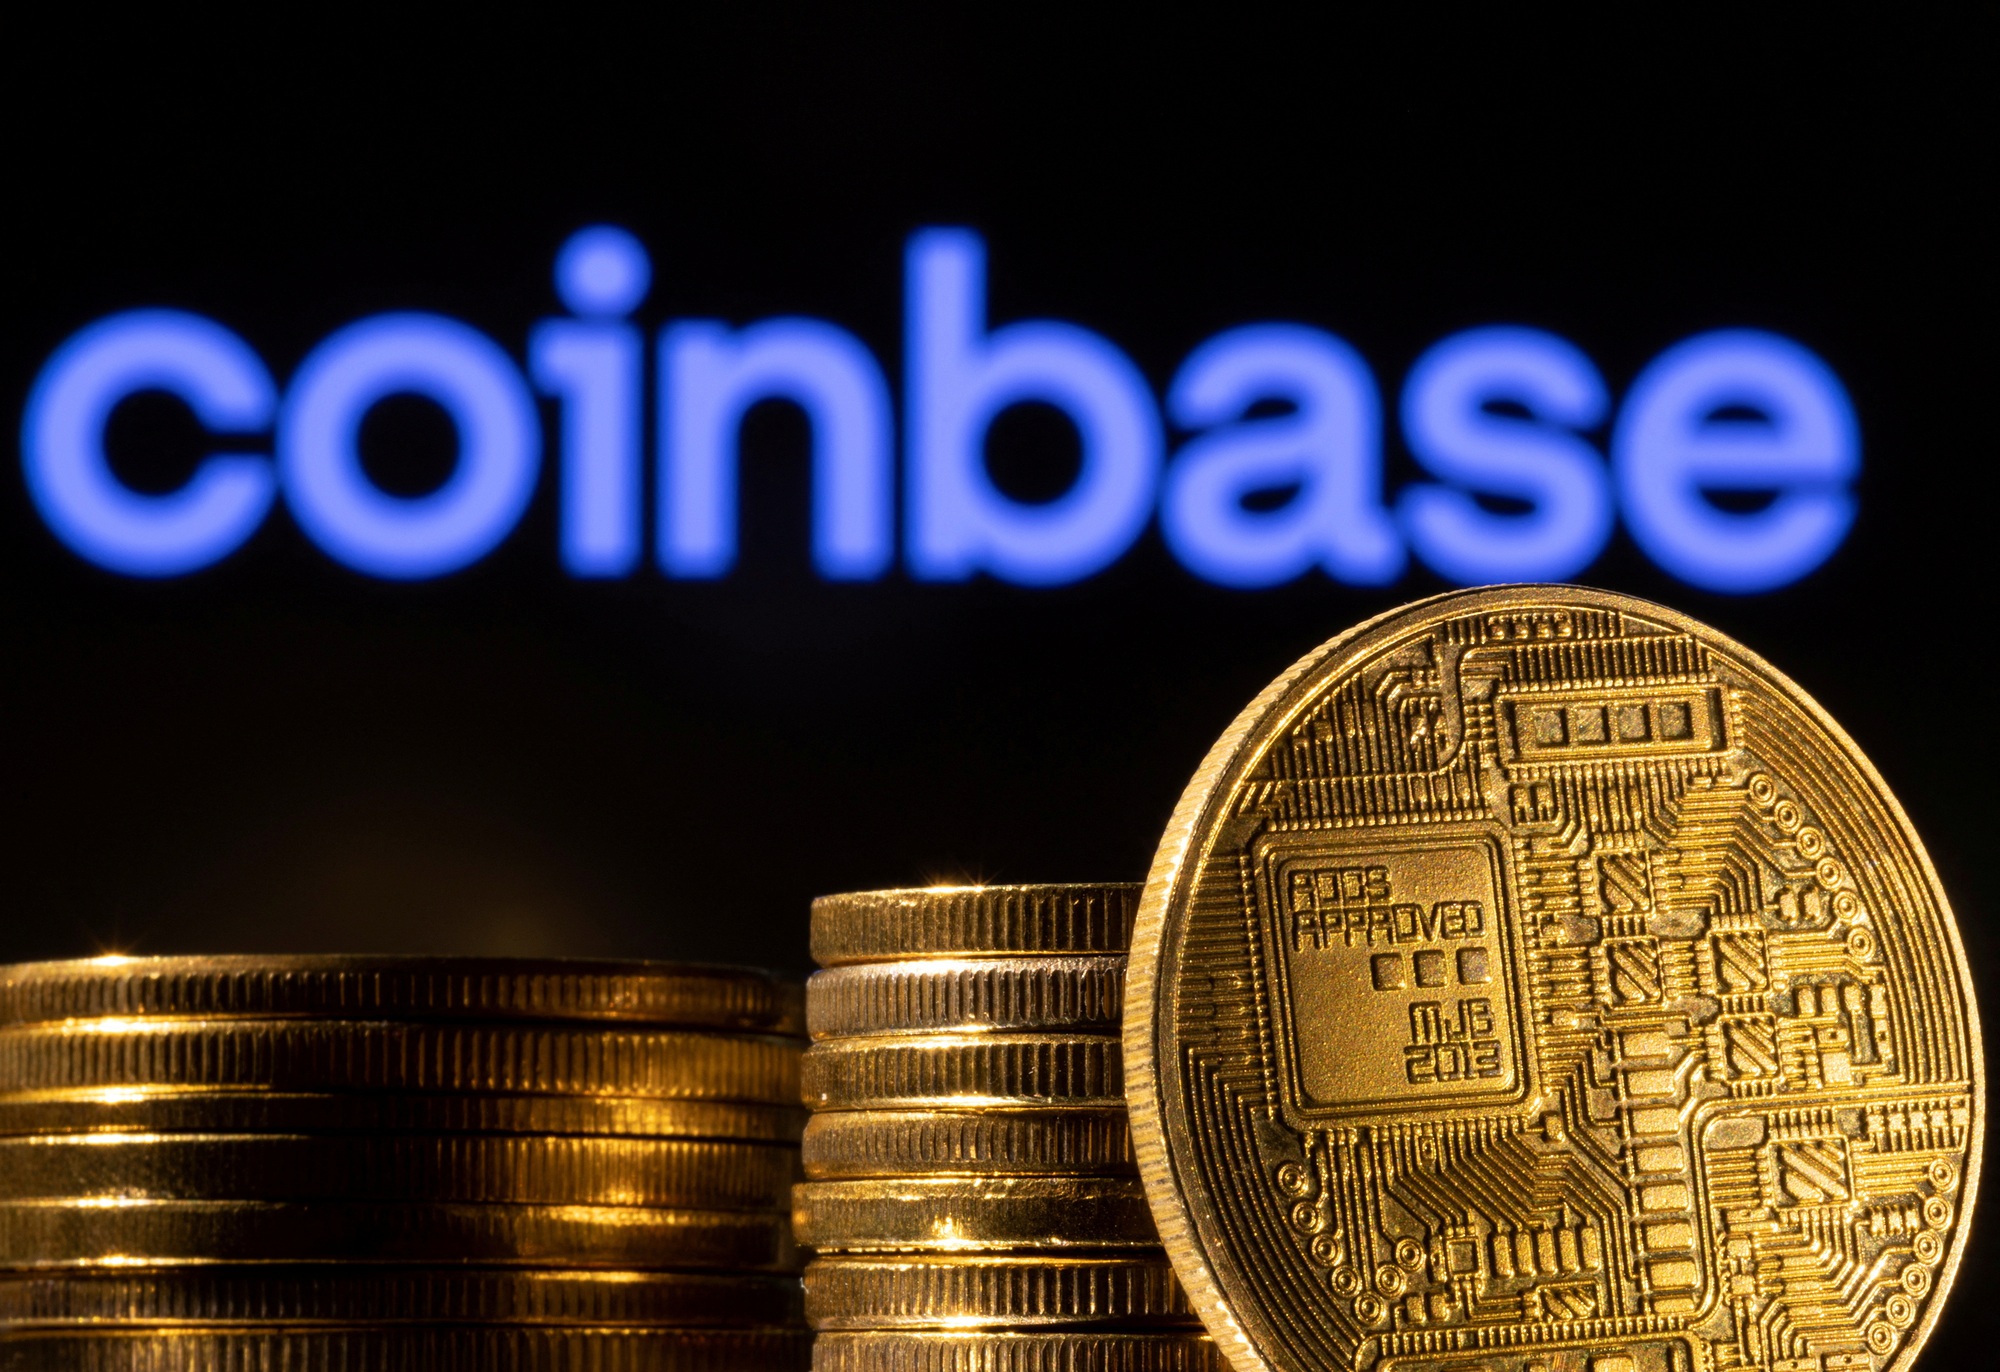 Binance và Coinbase bị kiện, nhà đầu tư đổ xô rút tiền